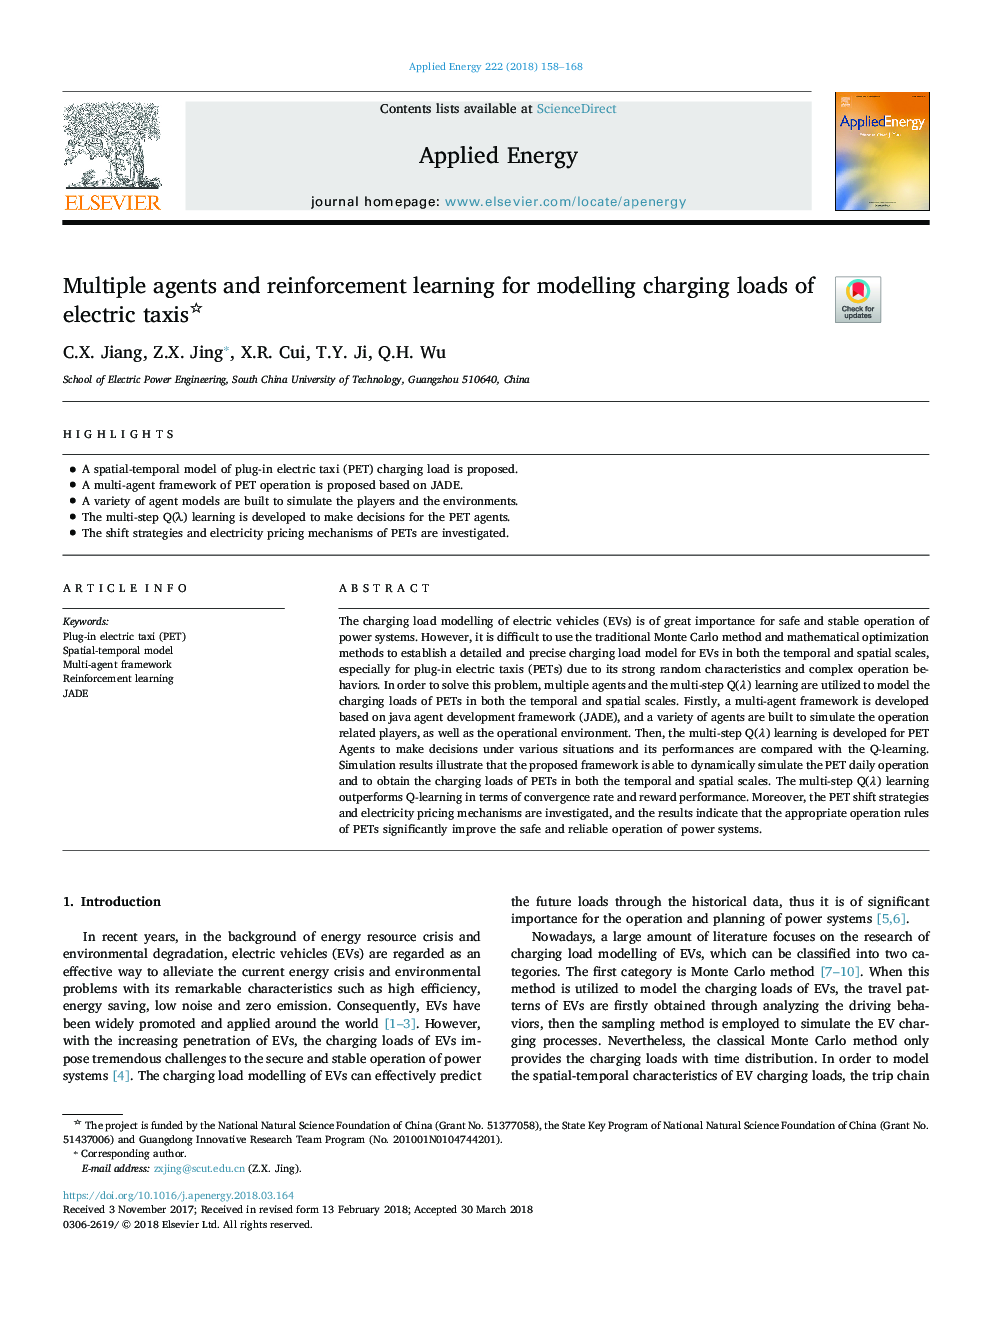 عوامل متعدد و تقویت یادگیری برای مدل سازی بارهای شارژ تاکسی های الکتریکی 